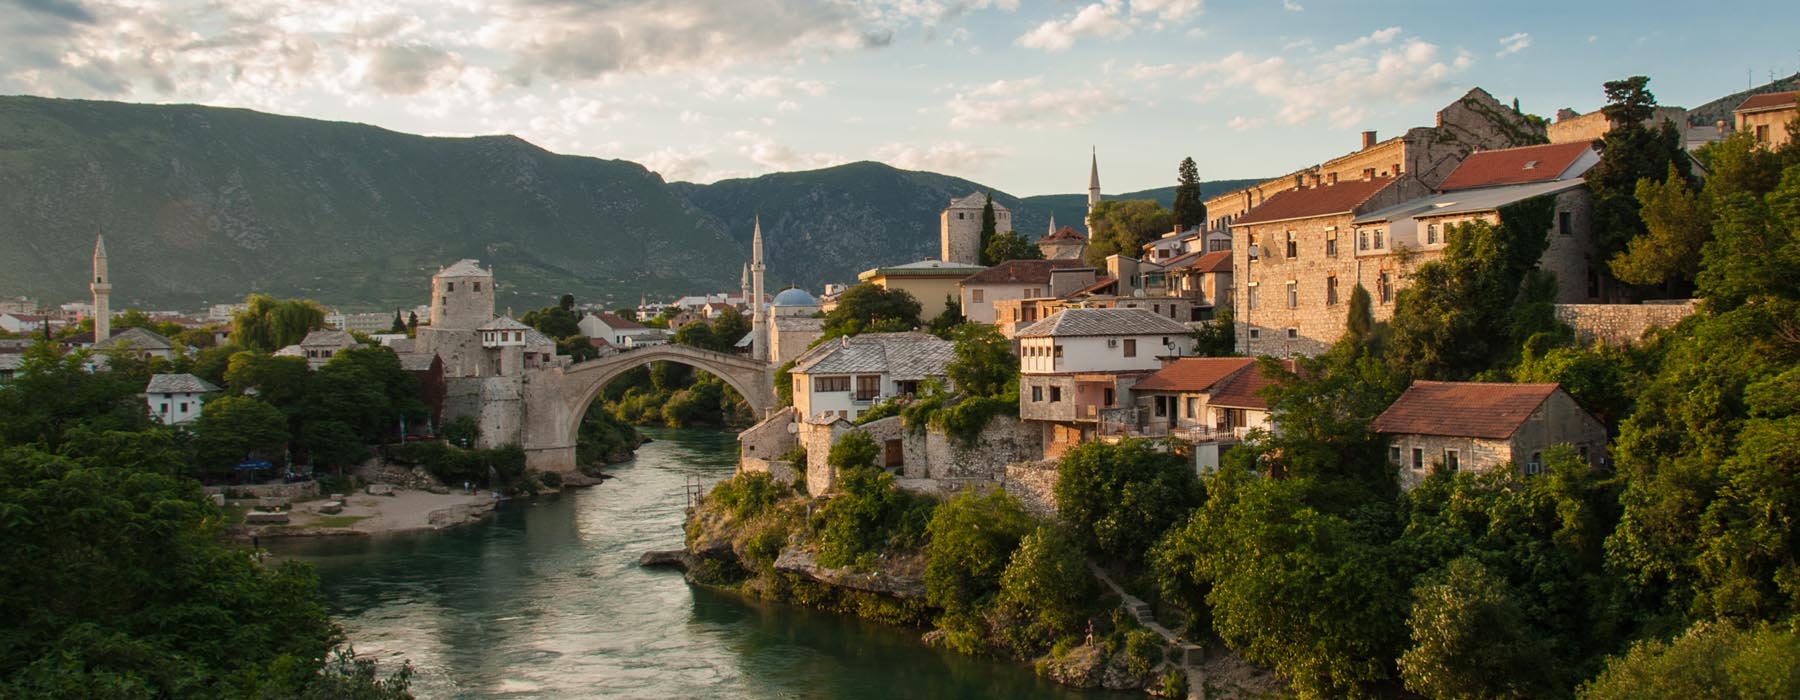 Le monde selon votre budget Bosnie-Herzégovine